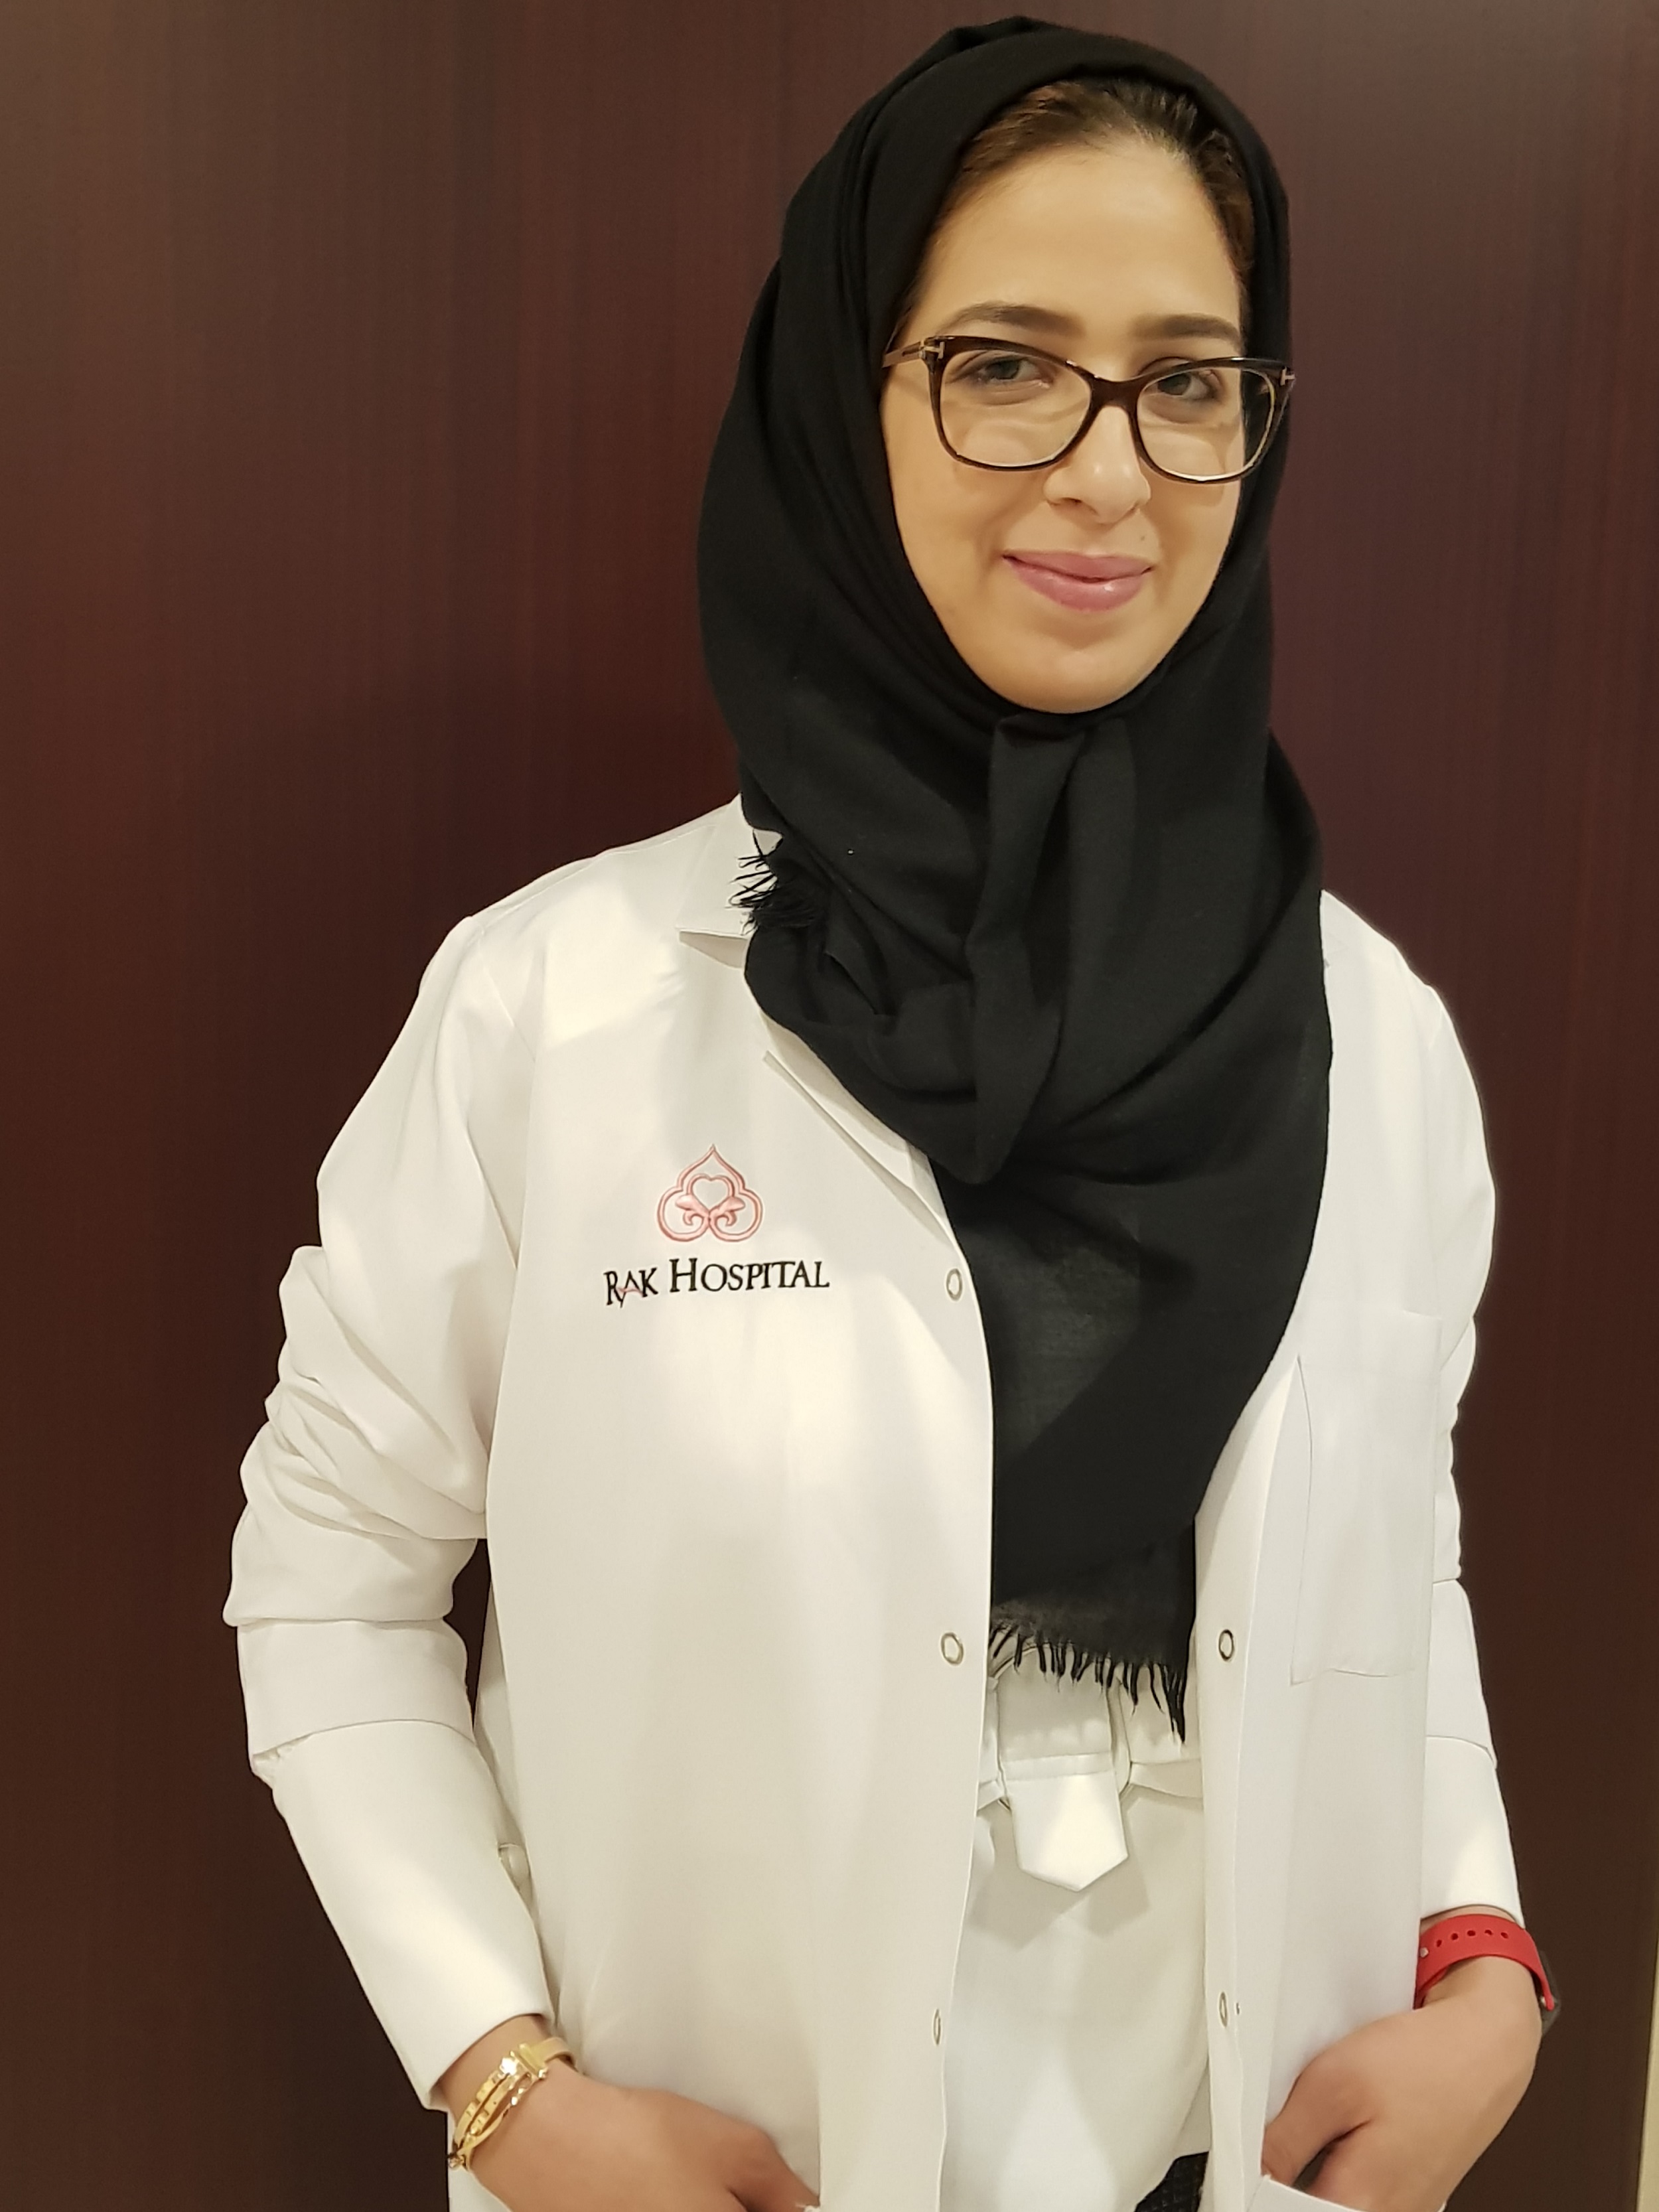 مستشفى رأس الخيمة ينظم حملة صحية مجانية بمناسبة رمضان 2019